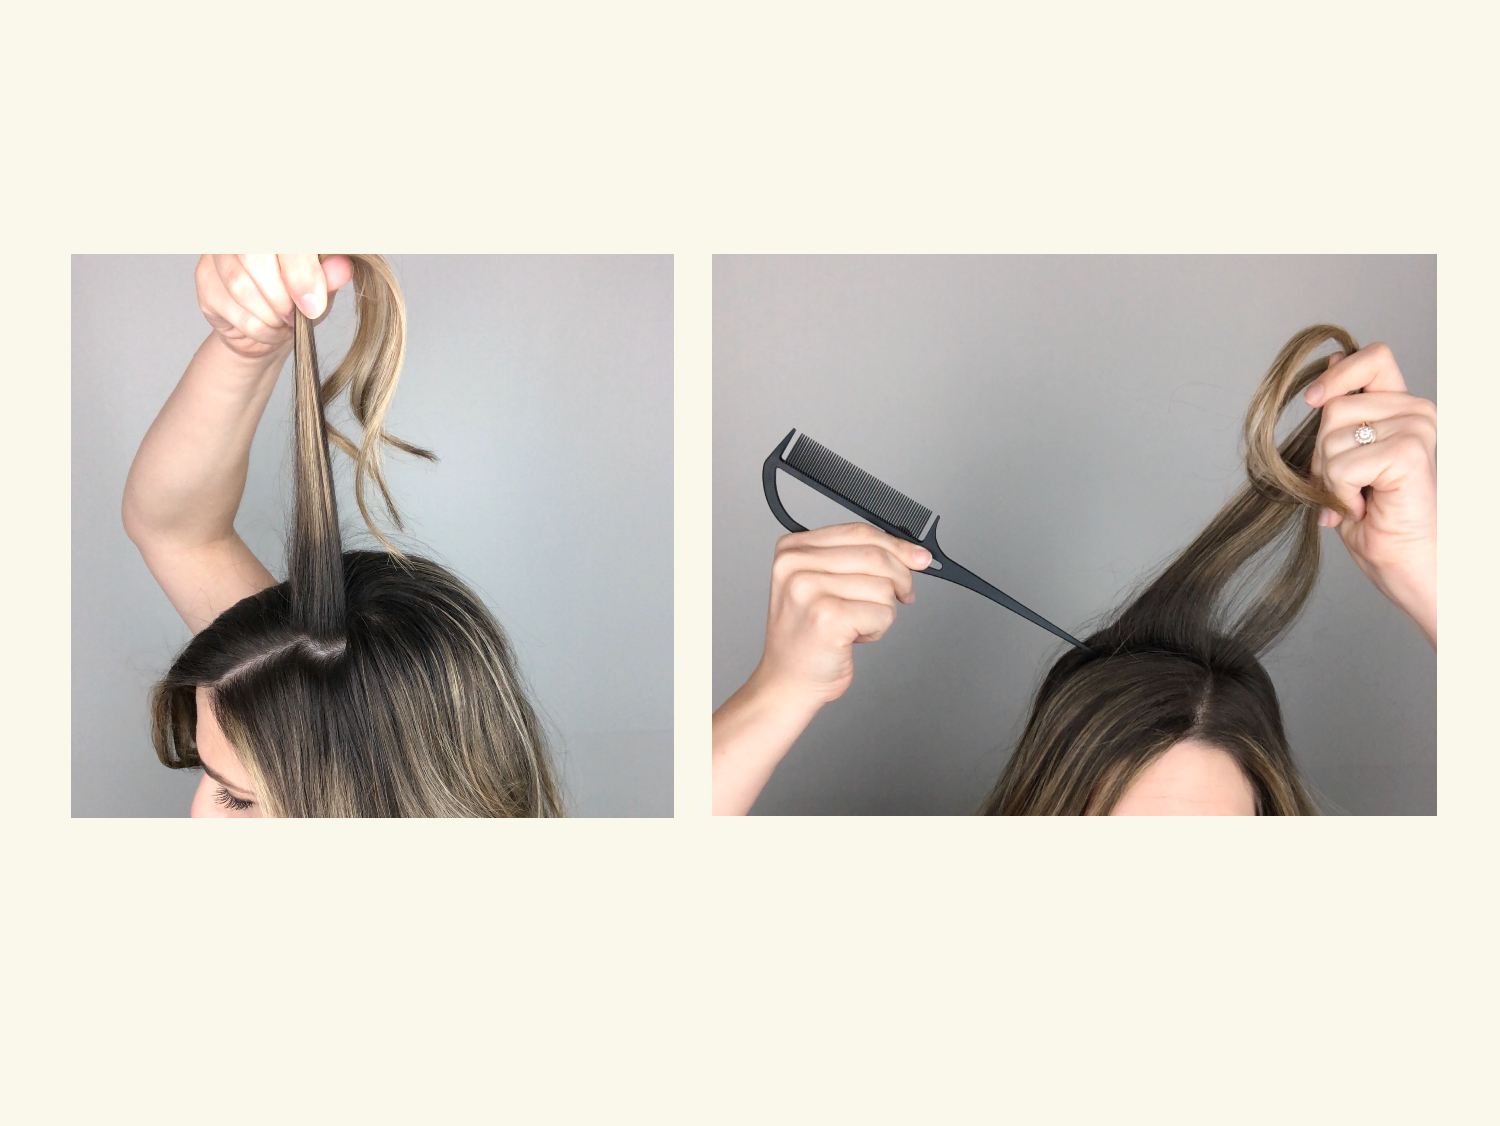 How to tease hair: Step 2